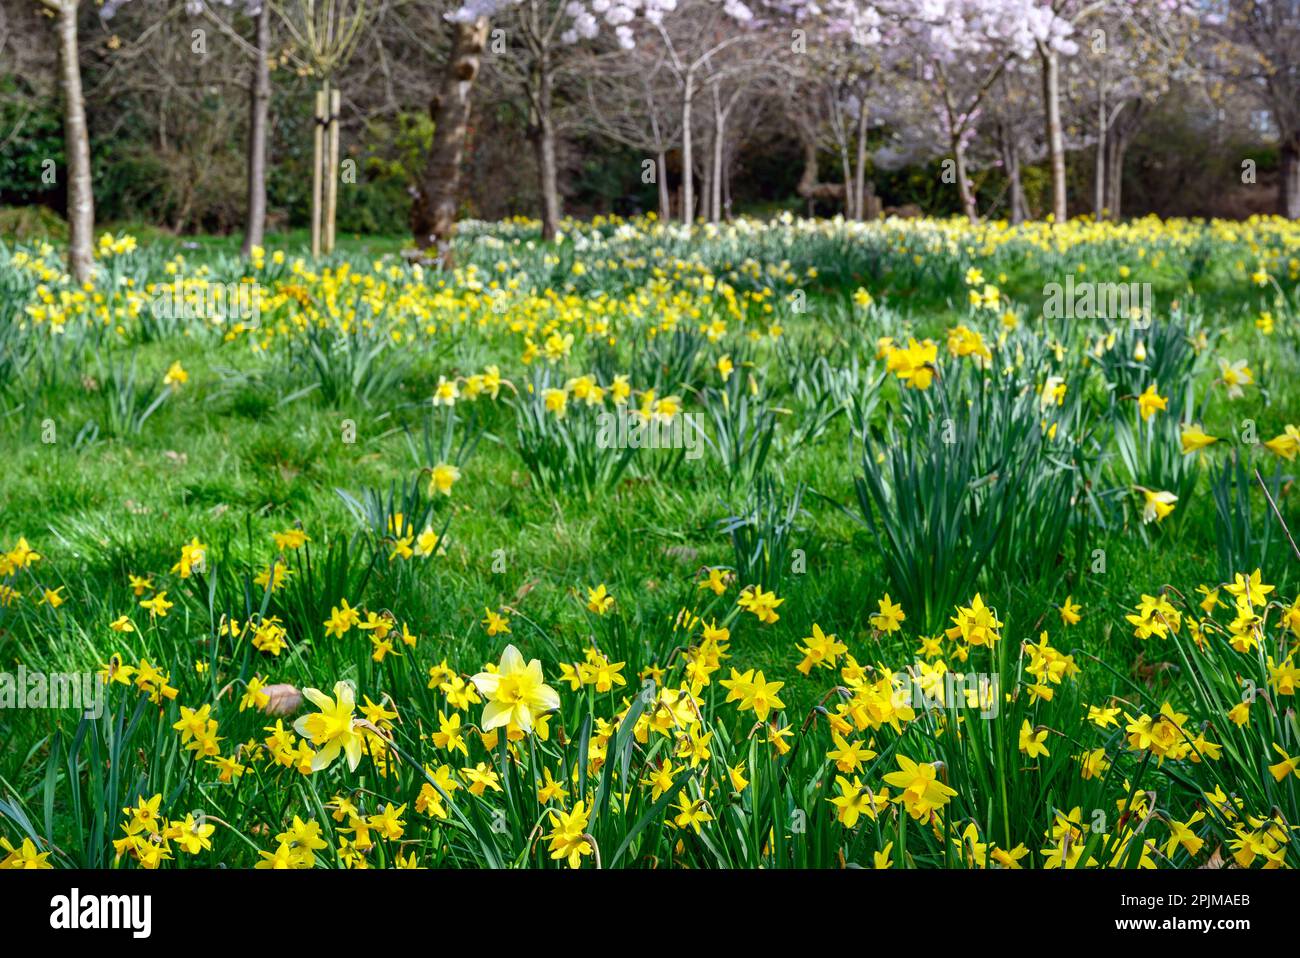 Narzissen in einem öffentlichen Park mit Bäumen. Gelbe Blüten im Frühling mit Vordergrundfokus. Kelsey Park, Beckenham, Kent, Großbritannien. Stockfoto